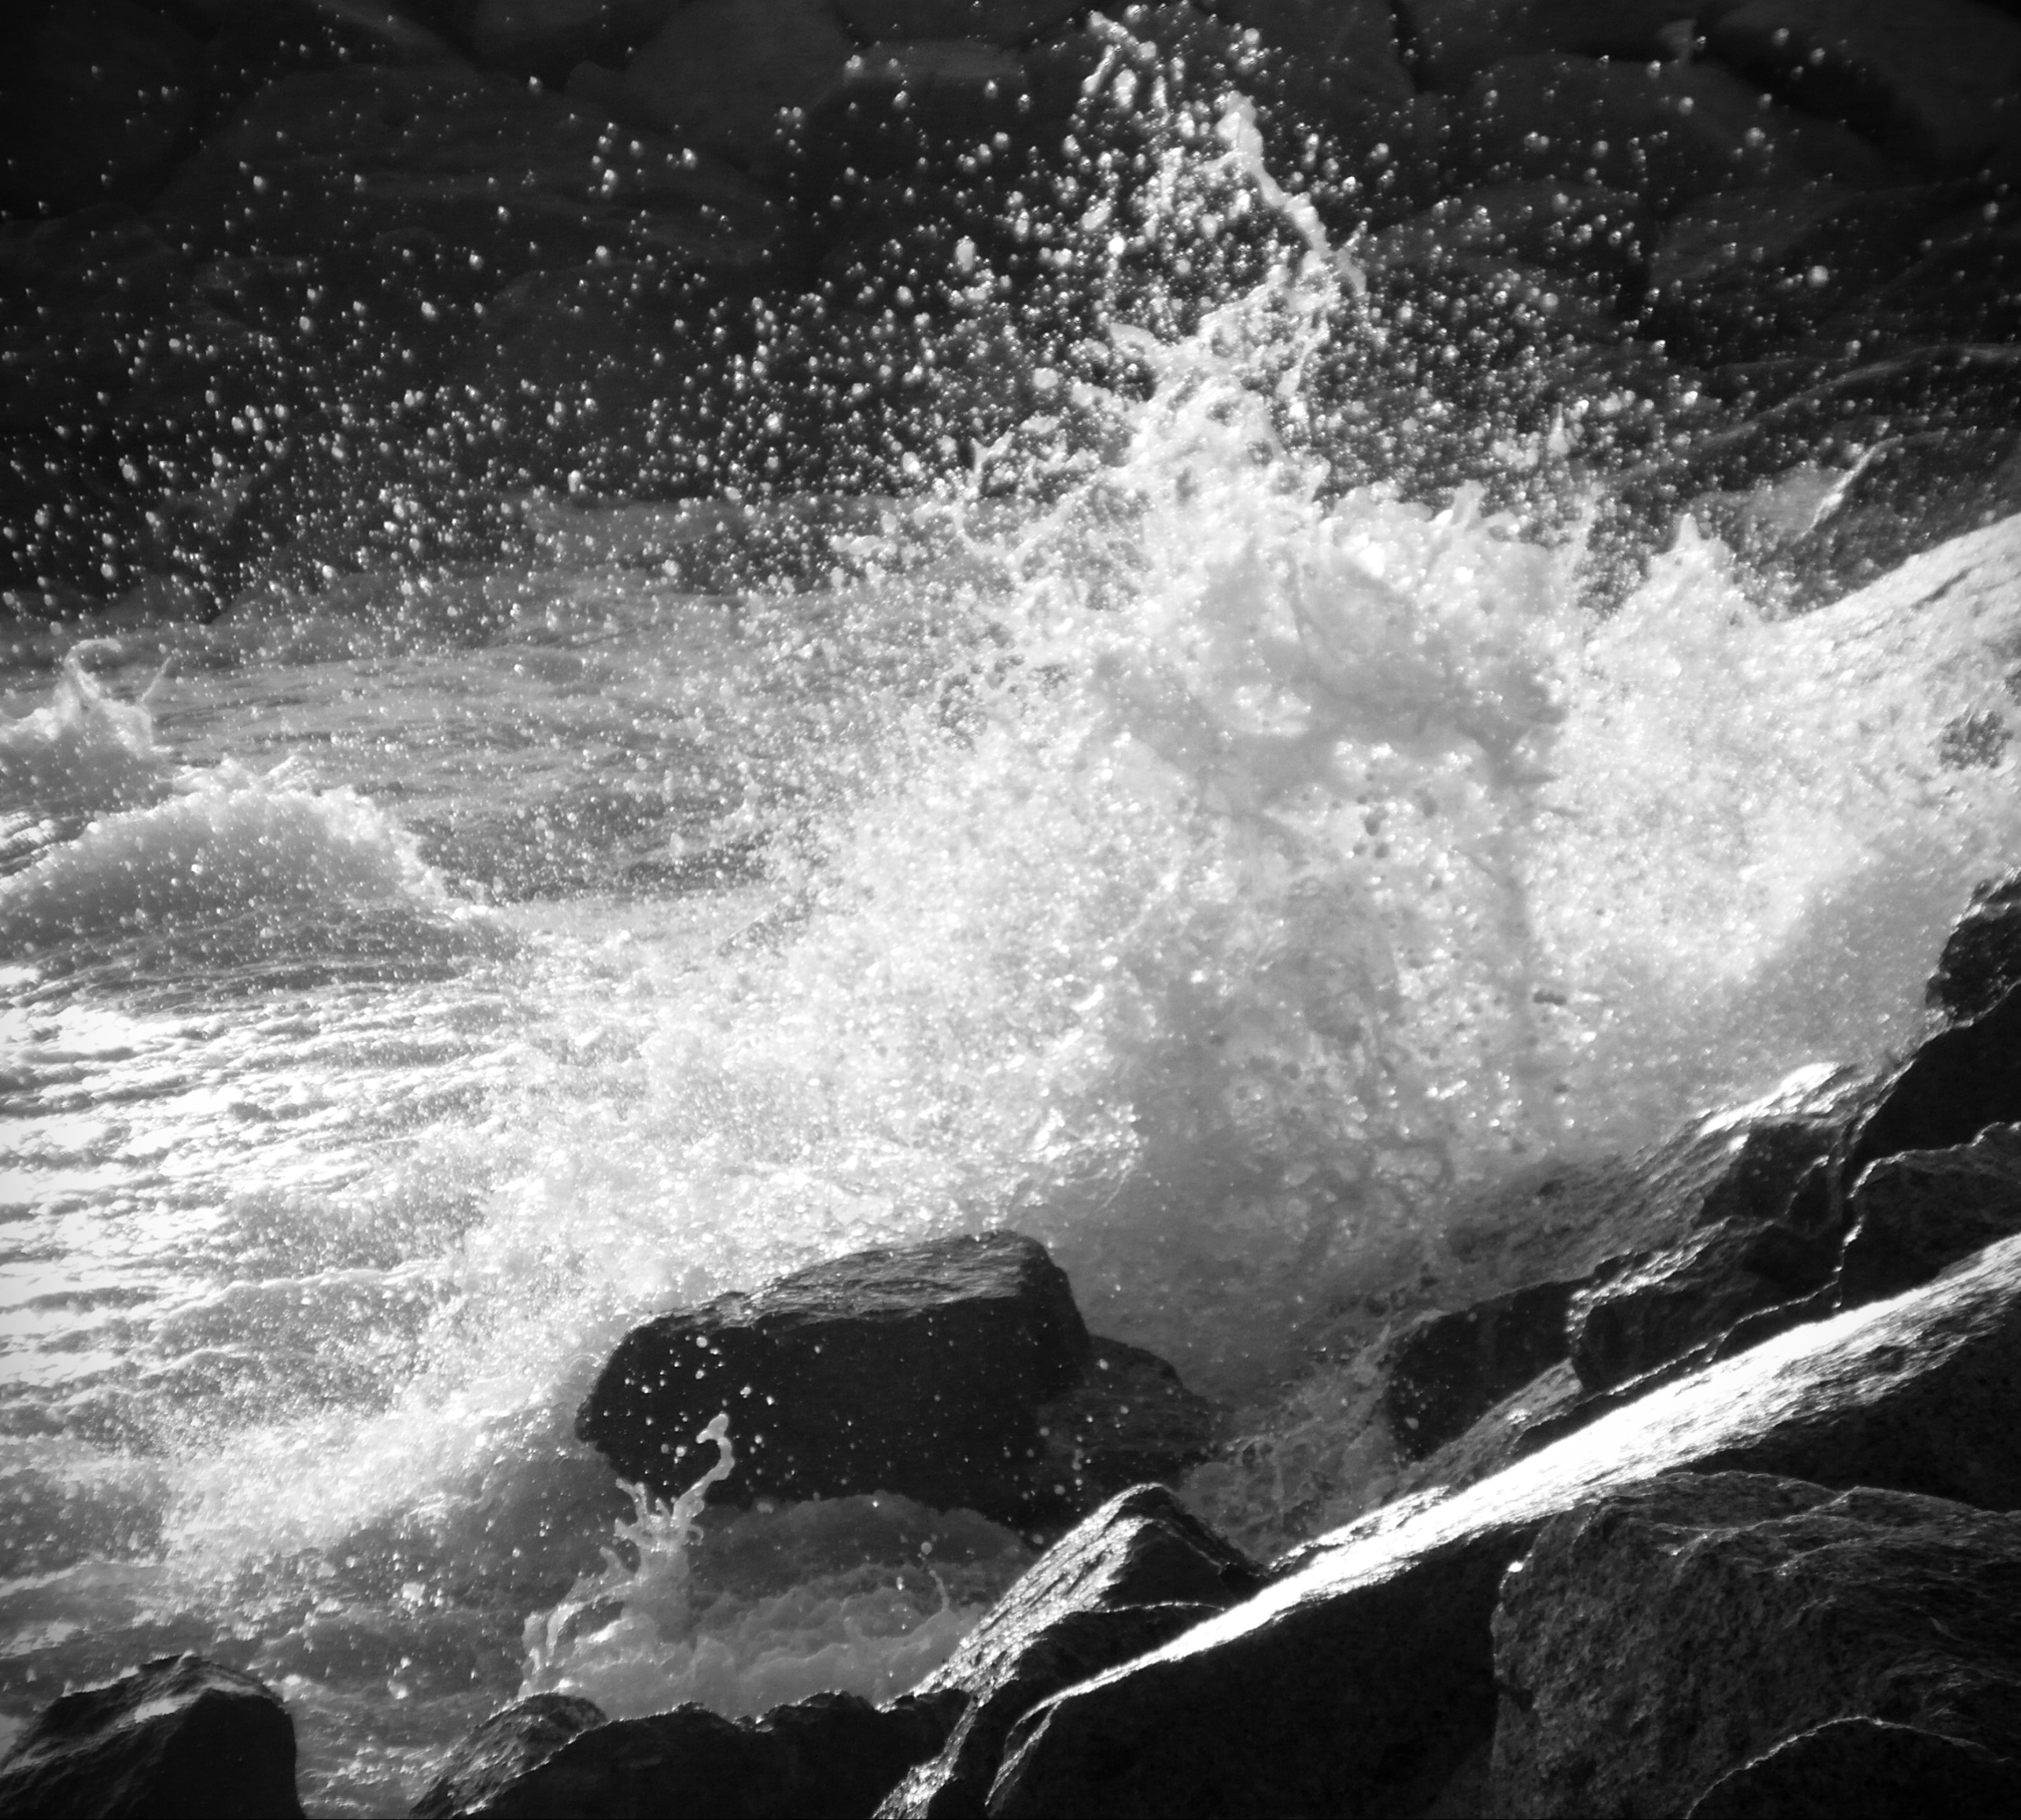 Waves crashing against rocks photo